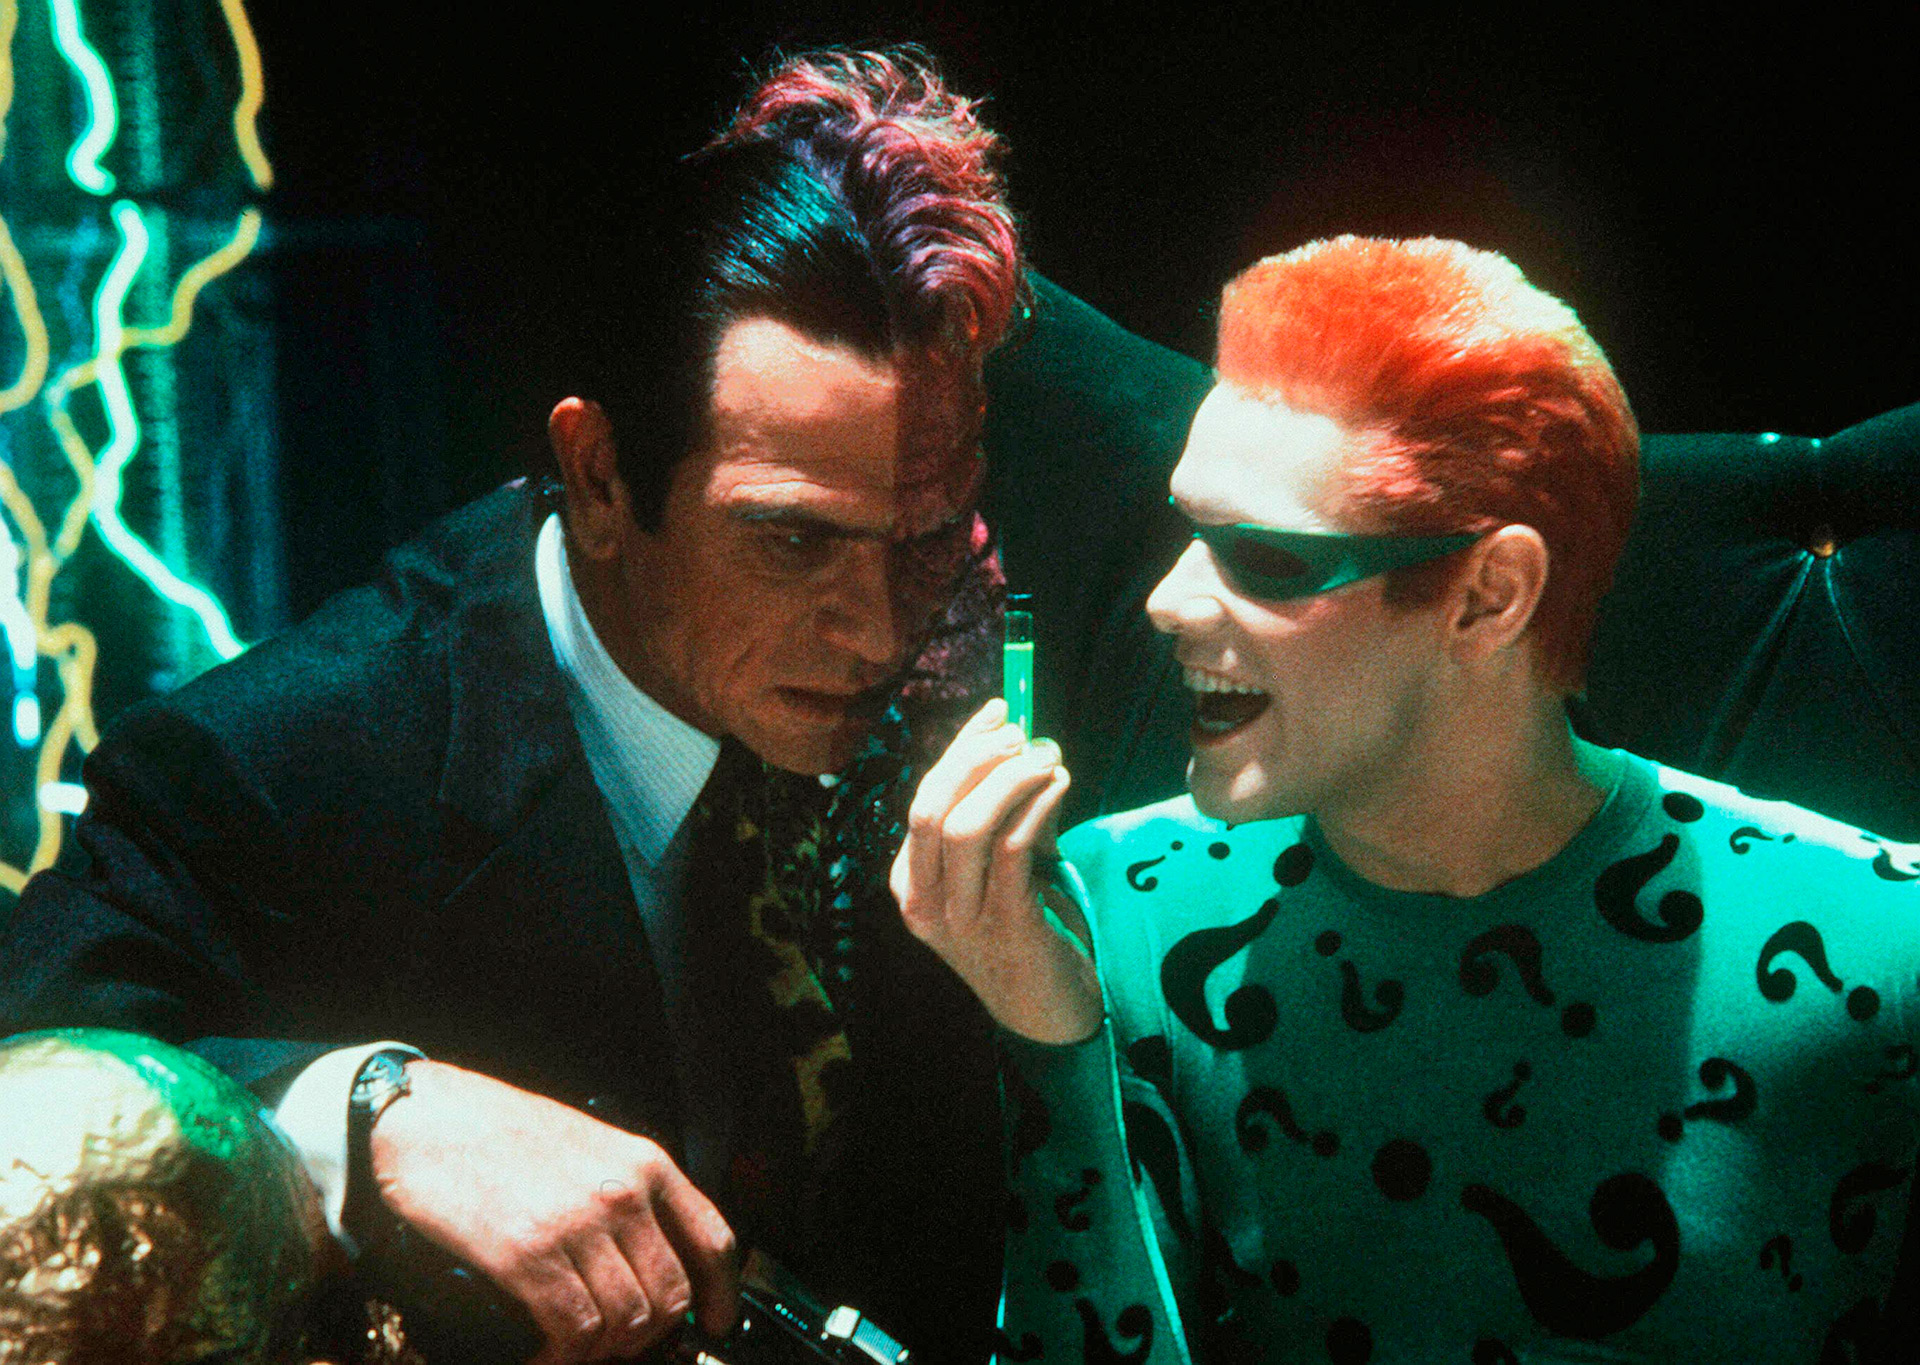 Jim Carrey y Tommy Lee Jones en las grabaciones de Batman Forever, en la que al parecer surgió la enemistad entre los colegas.

Shutterstock